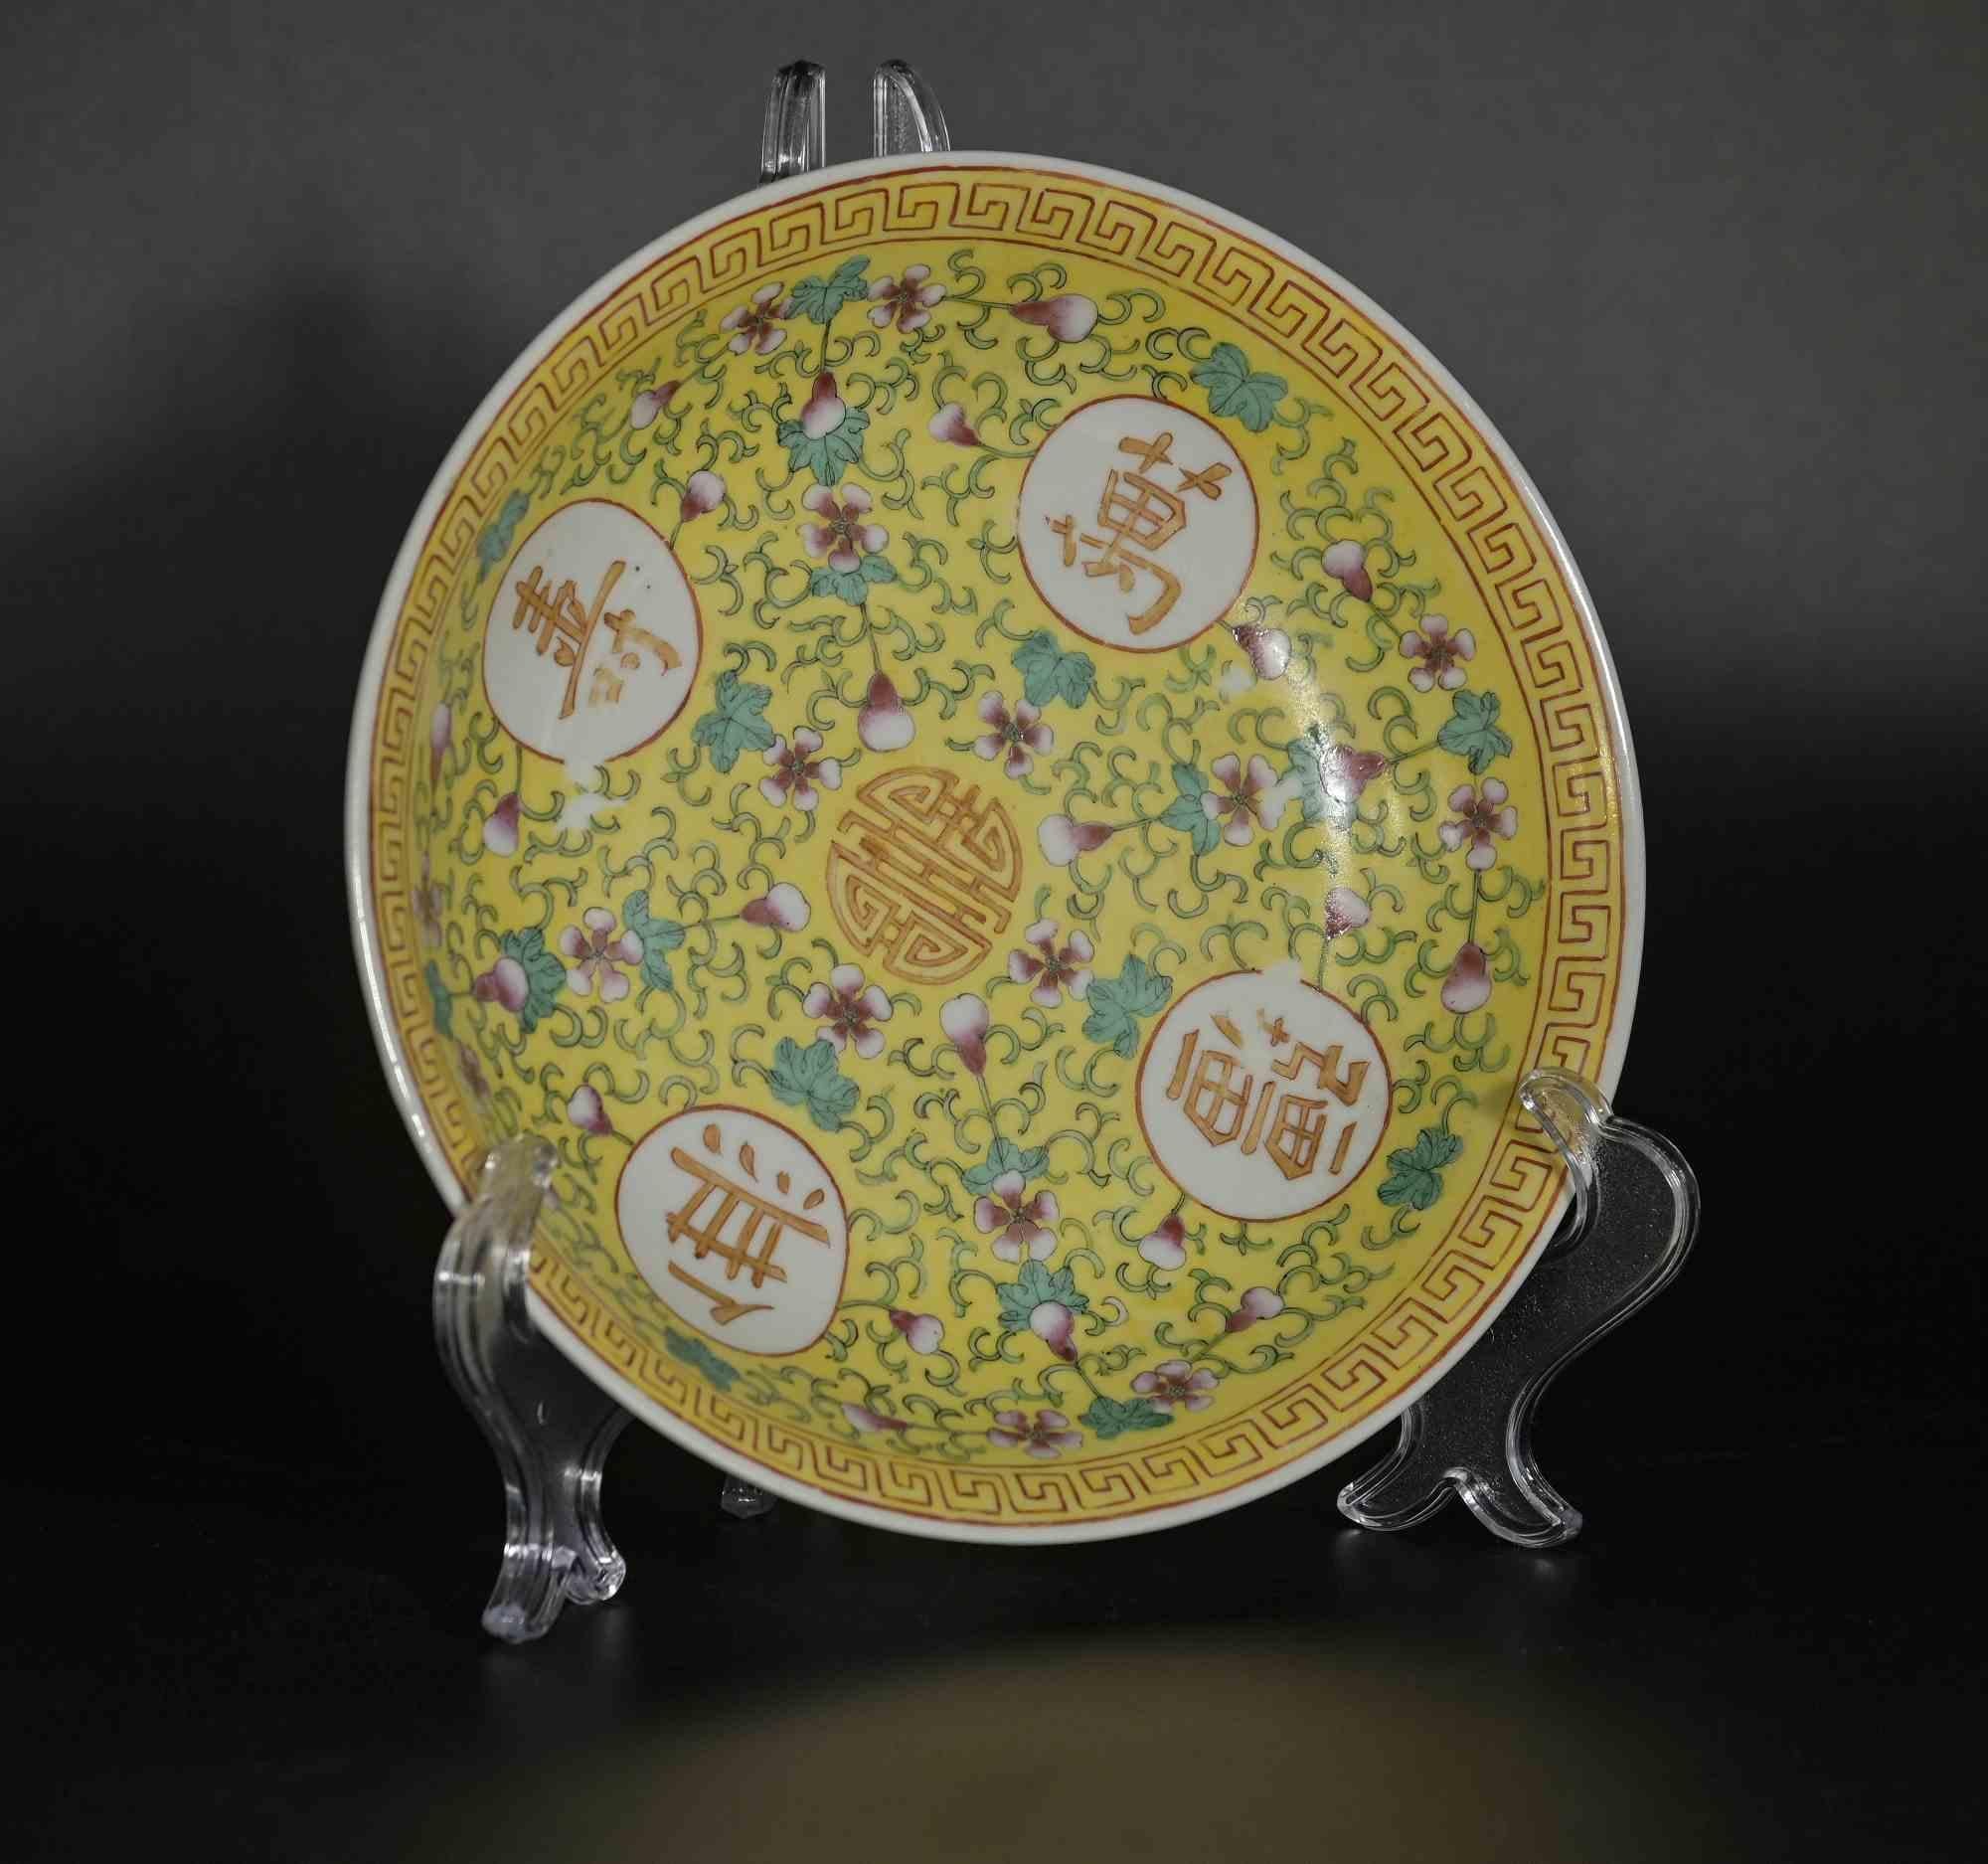 Chinesischer Keramikteller, China 19. Jahrhundert, wahrscheinlich während der Herrschaft von Guangxu in der Qing-Dynastie entstanden.

Florale Motive auf Gelb, mit chinesischer Schrift und Mäandern am Rand. 

Durchmesser der Platte  23 cm.

Gute